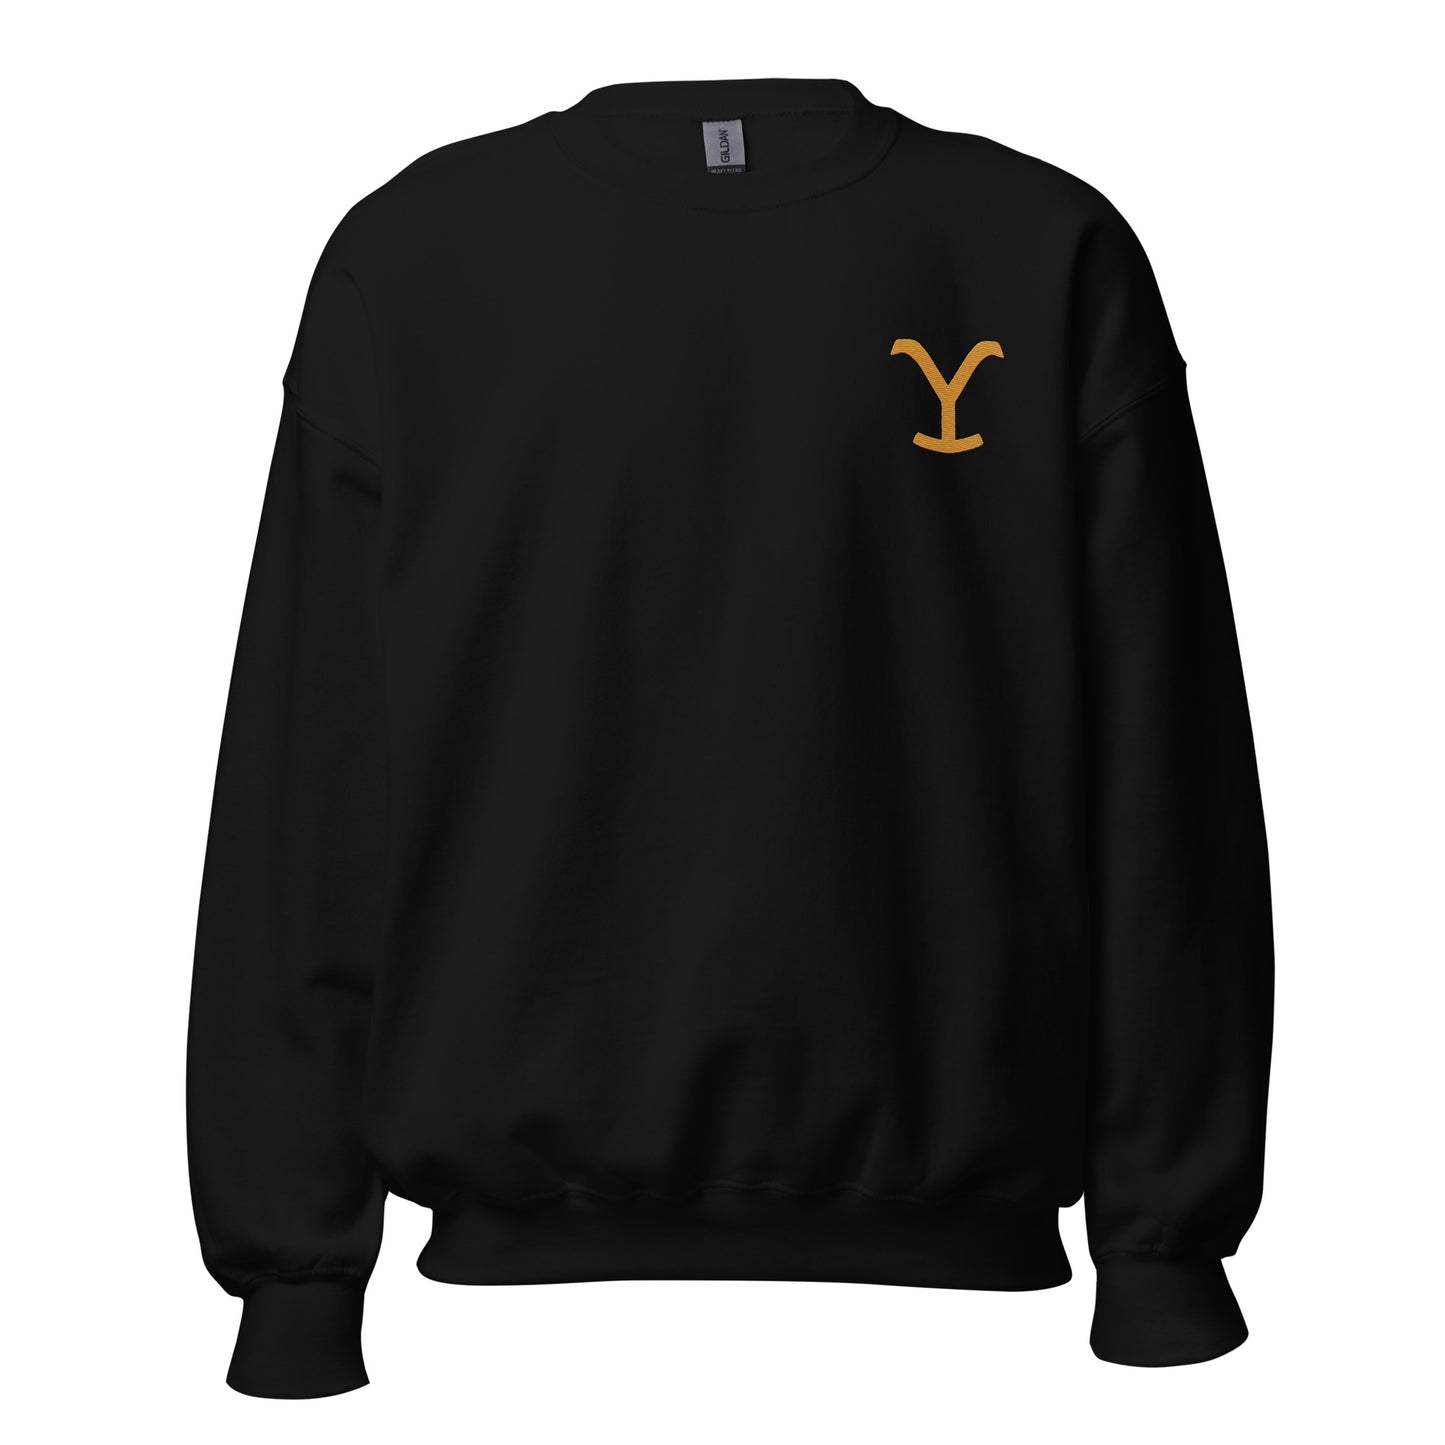 Yellowstone Y Embroidered Sweatshirt